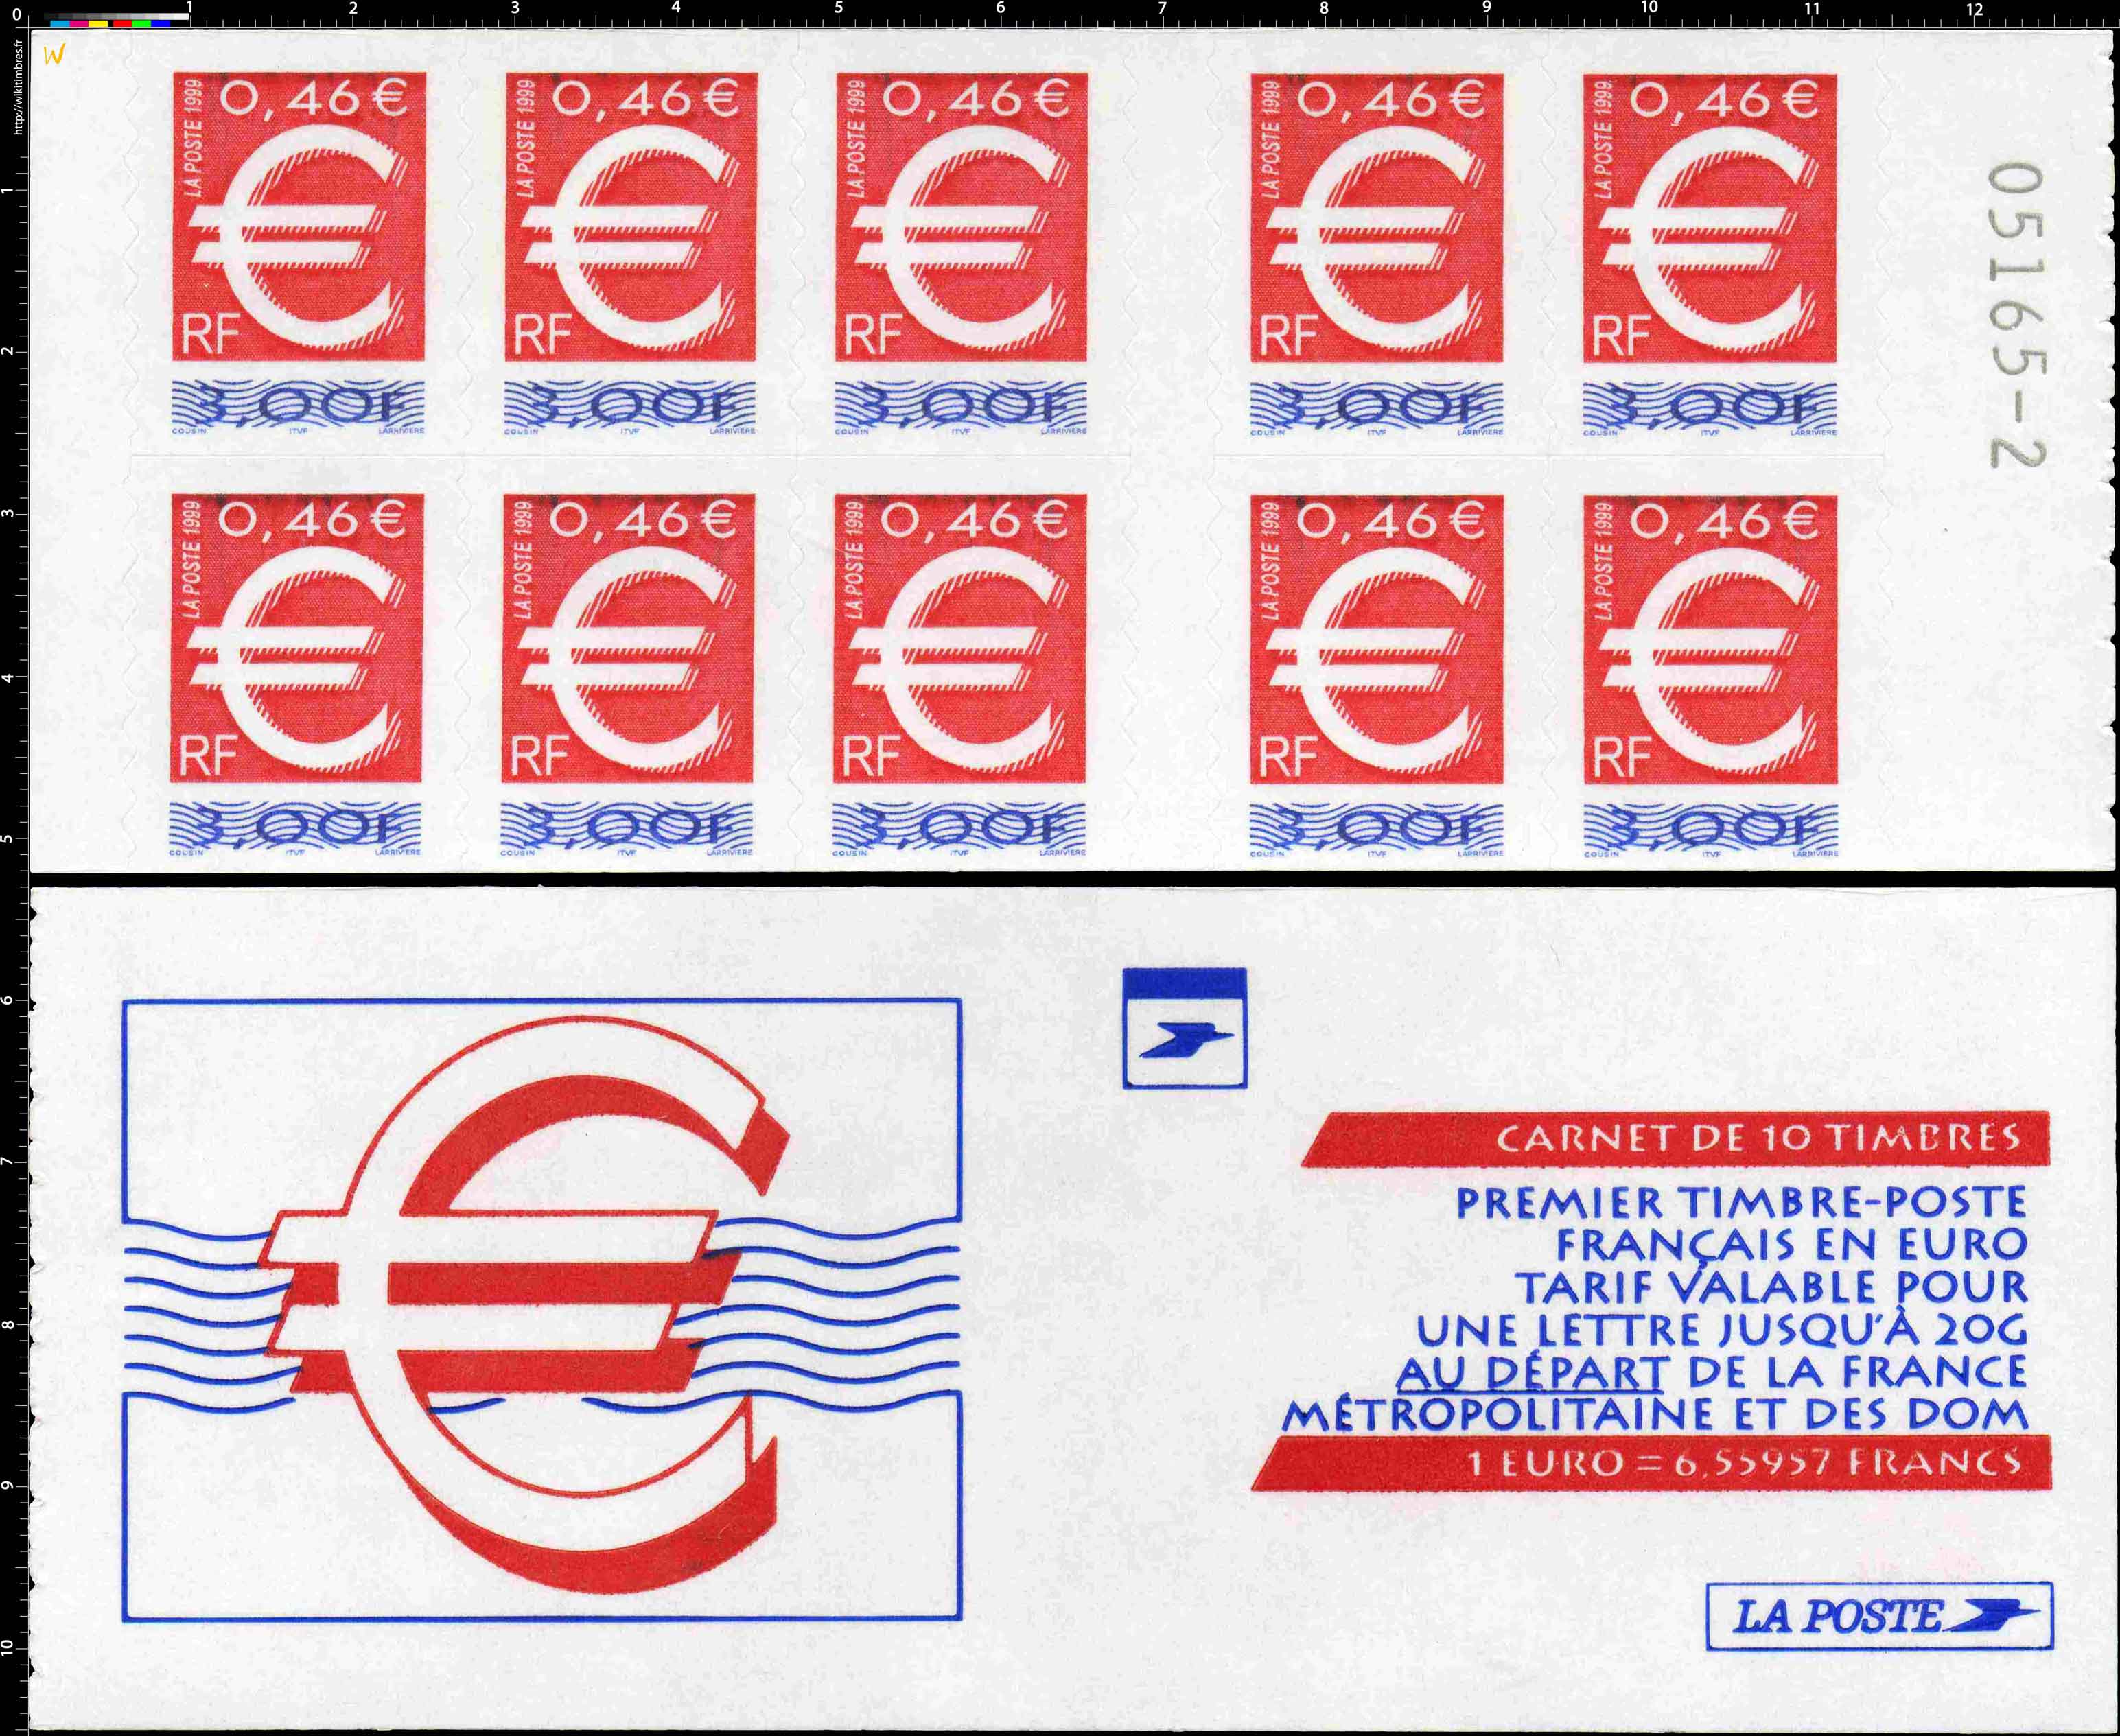 le premier timbre français en euro